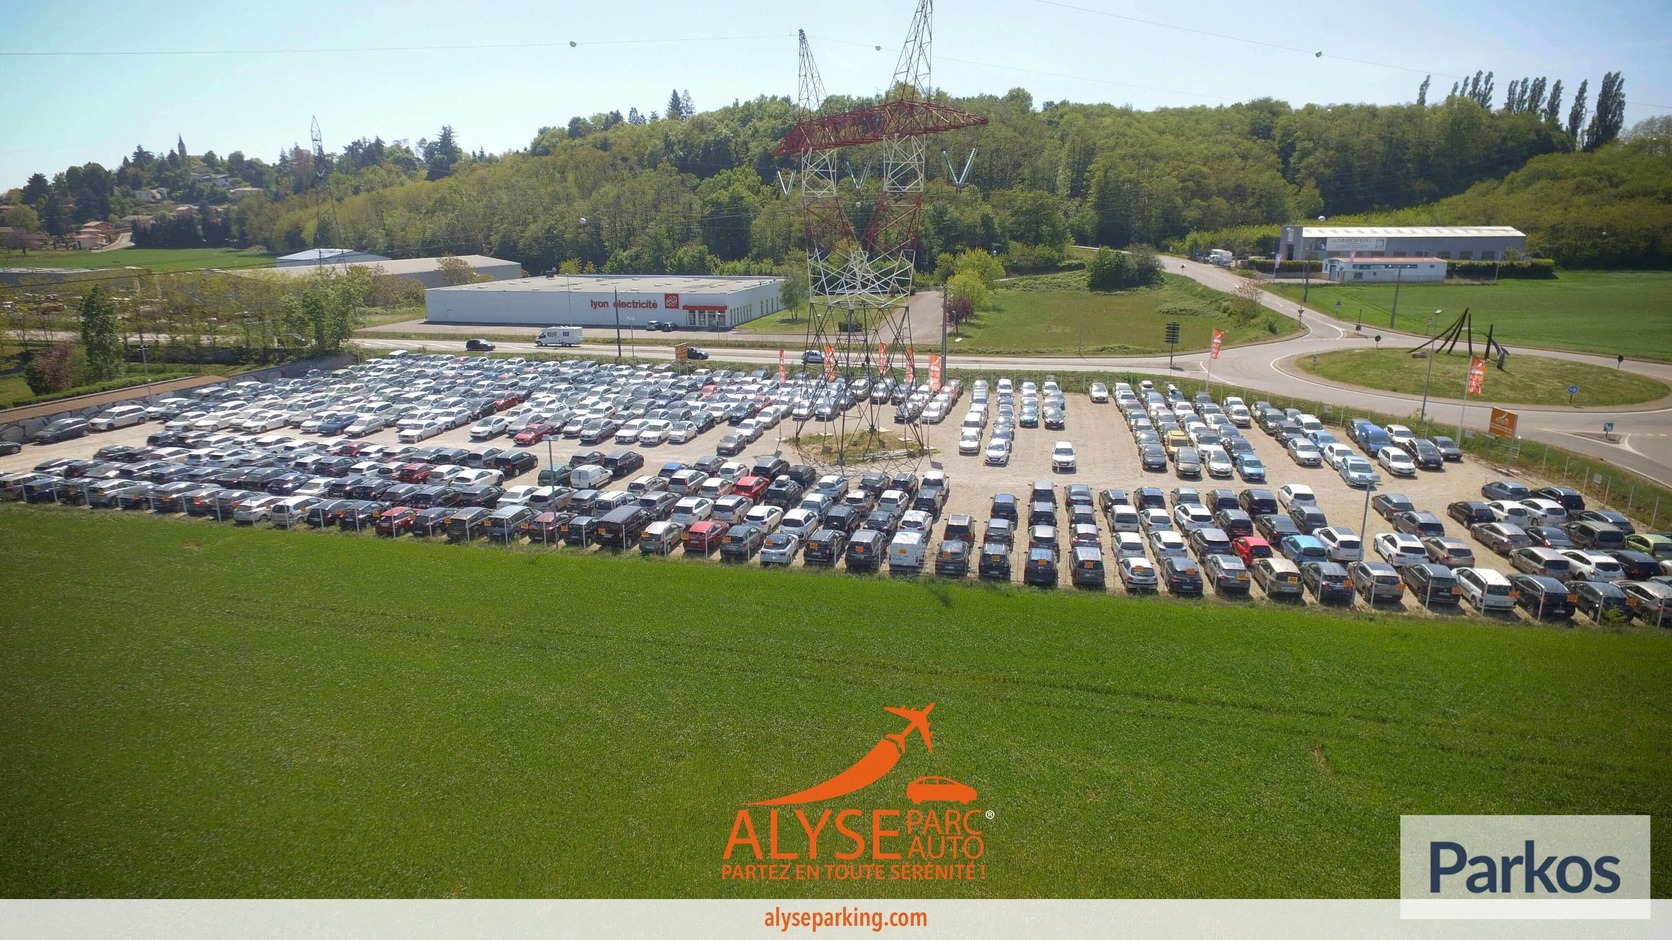 Alyse Parc Auto Bâle-Mulhouse - Basel Airport Parking - picture 1